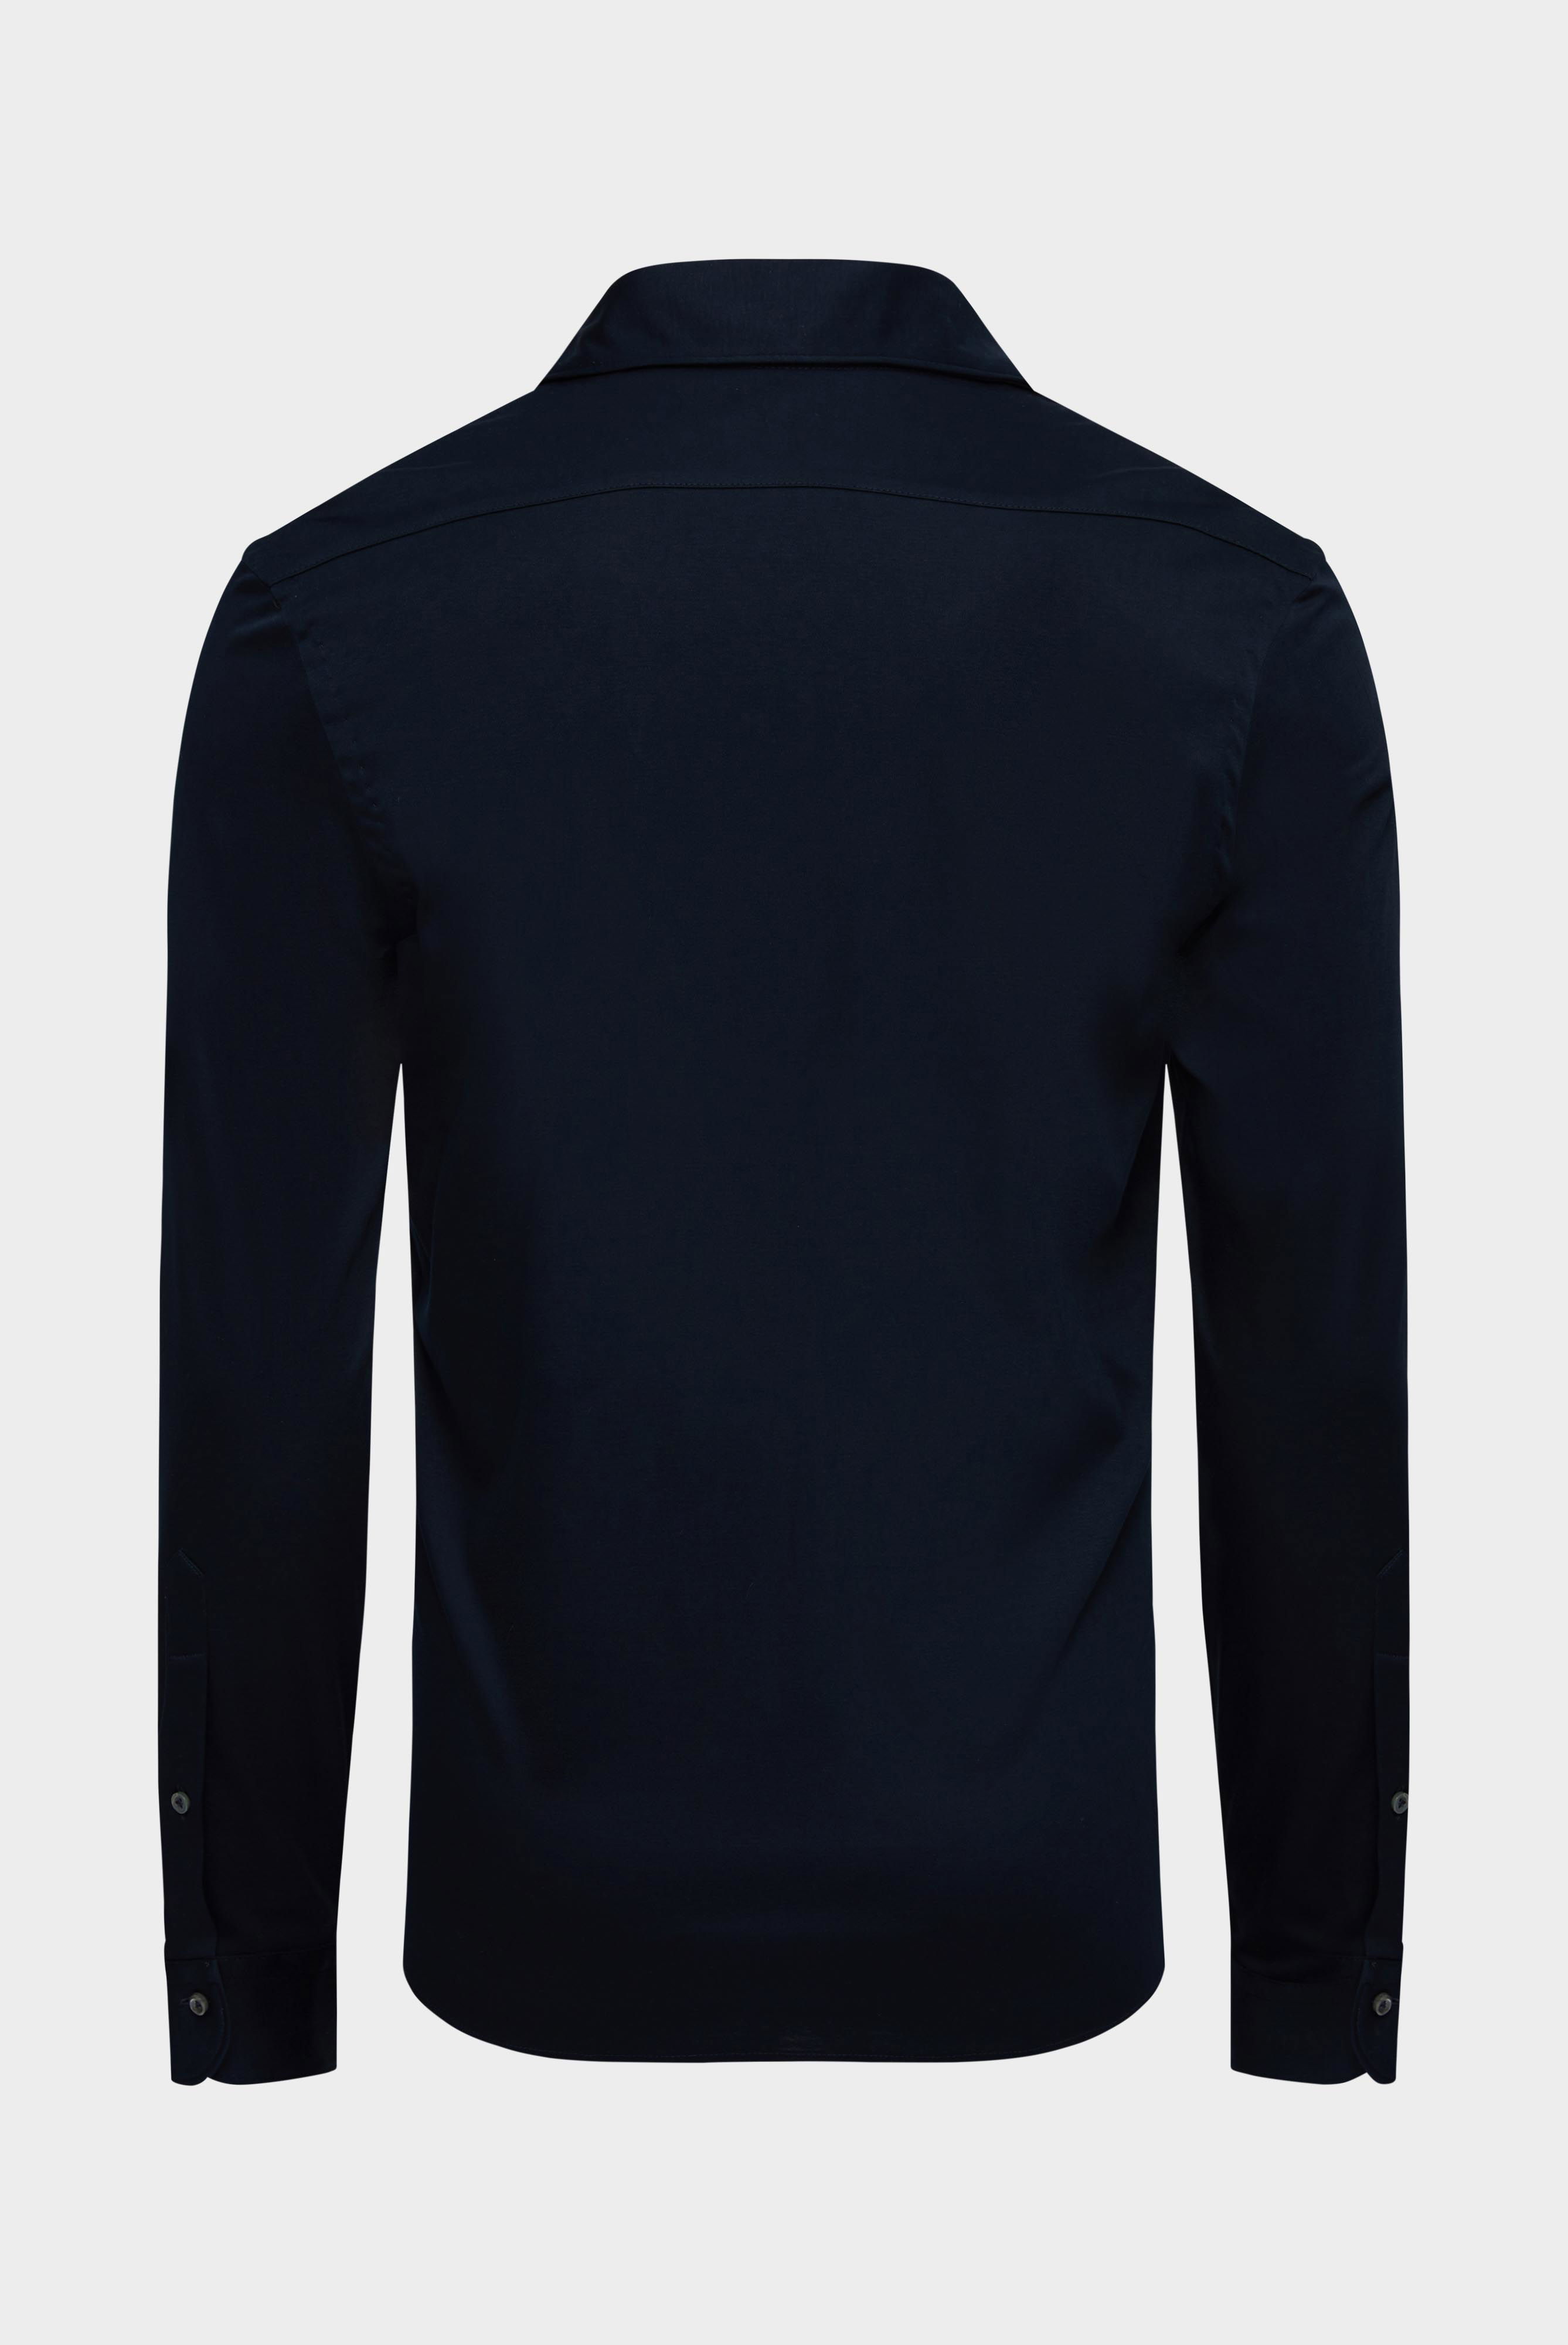 Jersey Shirts+Jersey Shirt Swiss Cotton Slim Fit+20.1682.UC.180031.790.XL